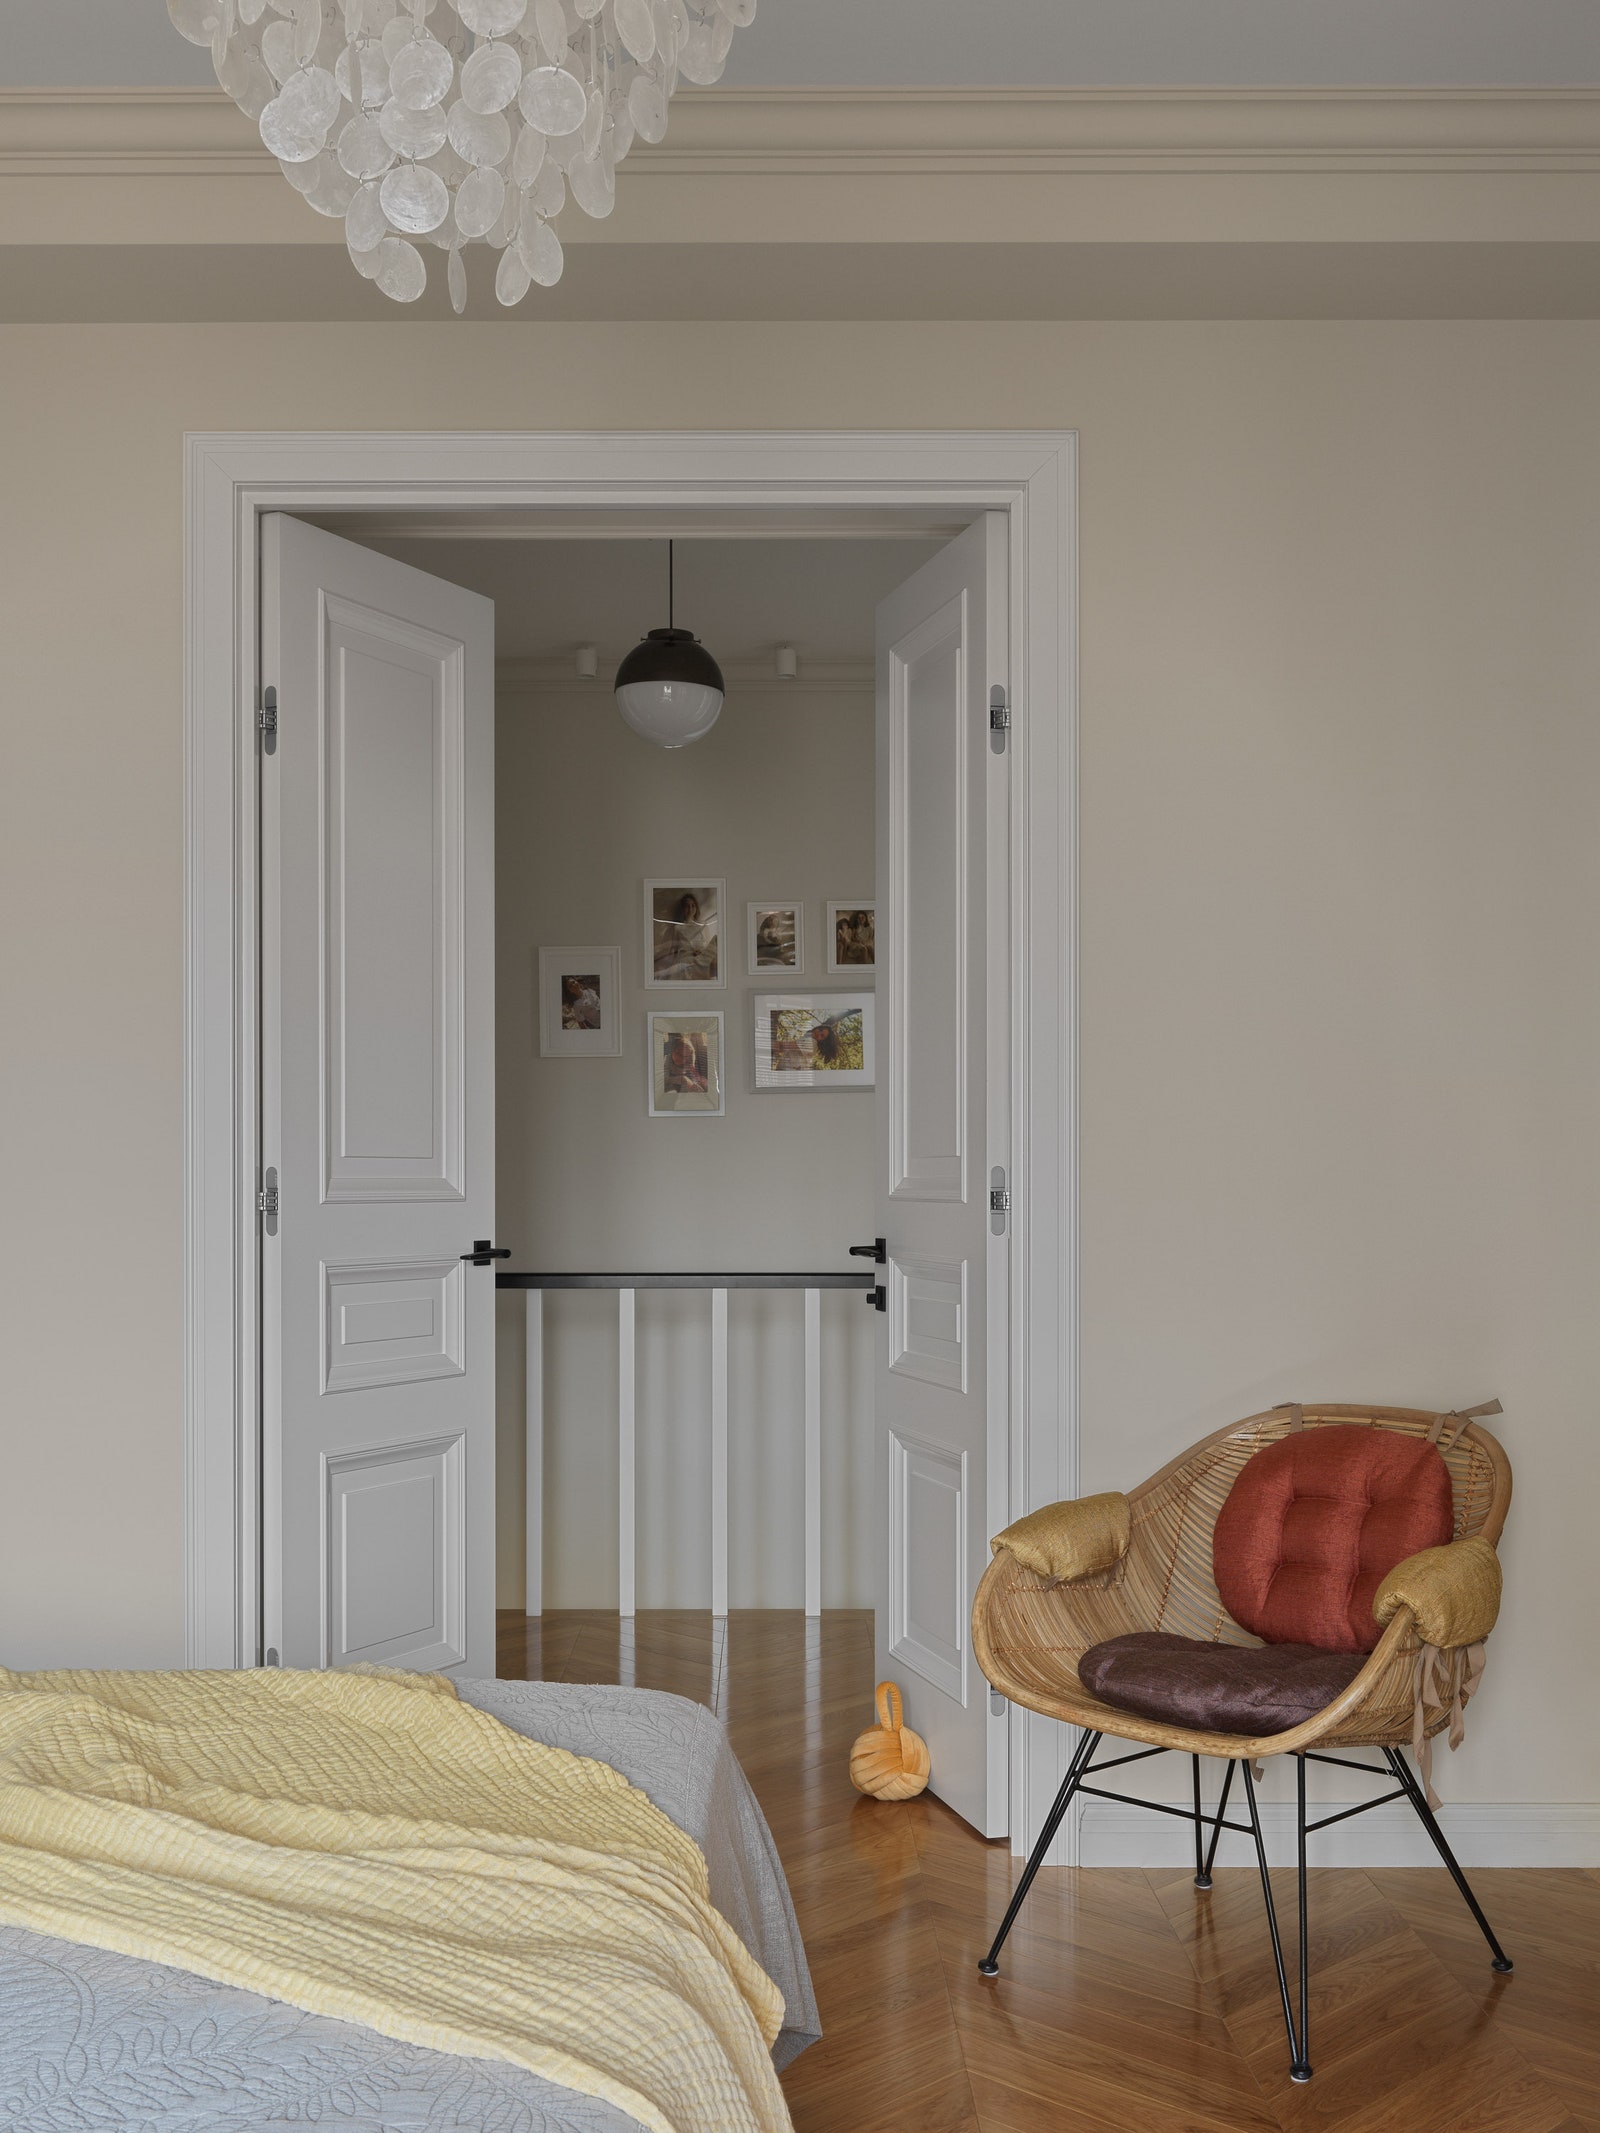 Фрагмент спальни. Кровать Dantone Home плетеное кресло Maisons du Monde подвесной светильник Verpan.